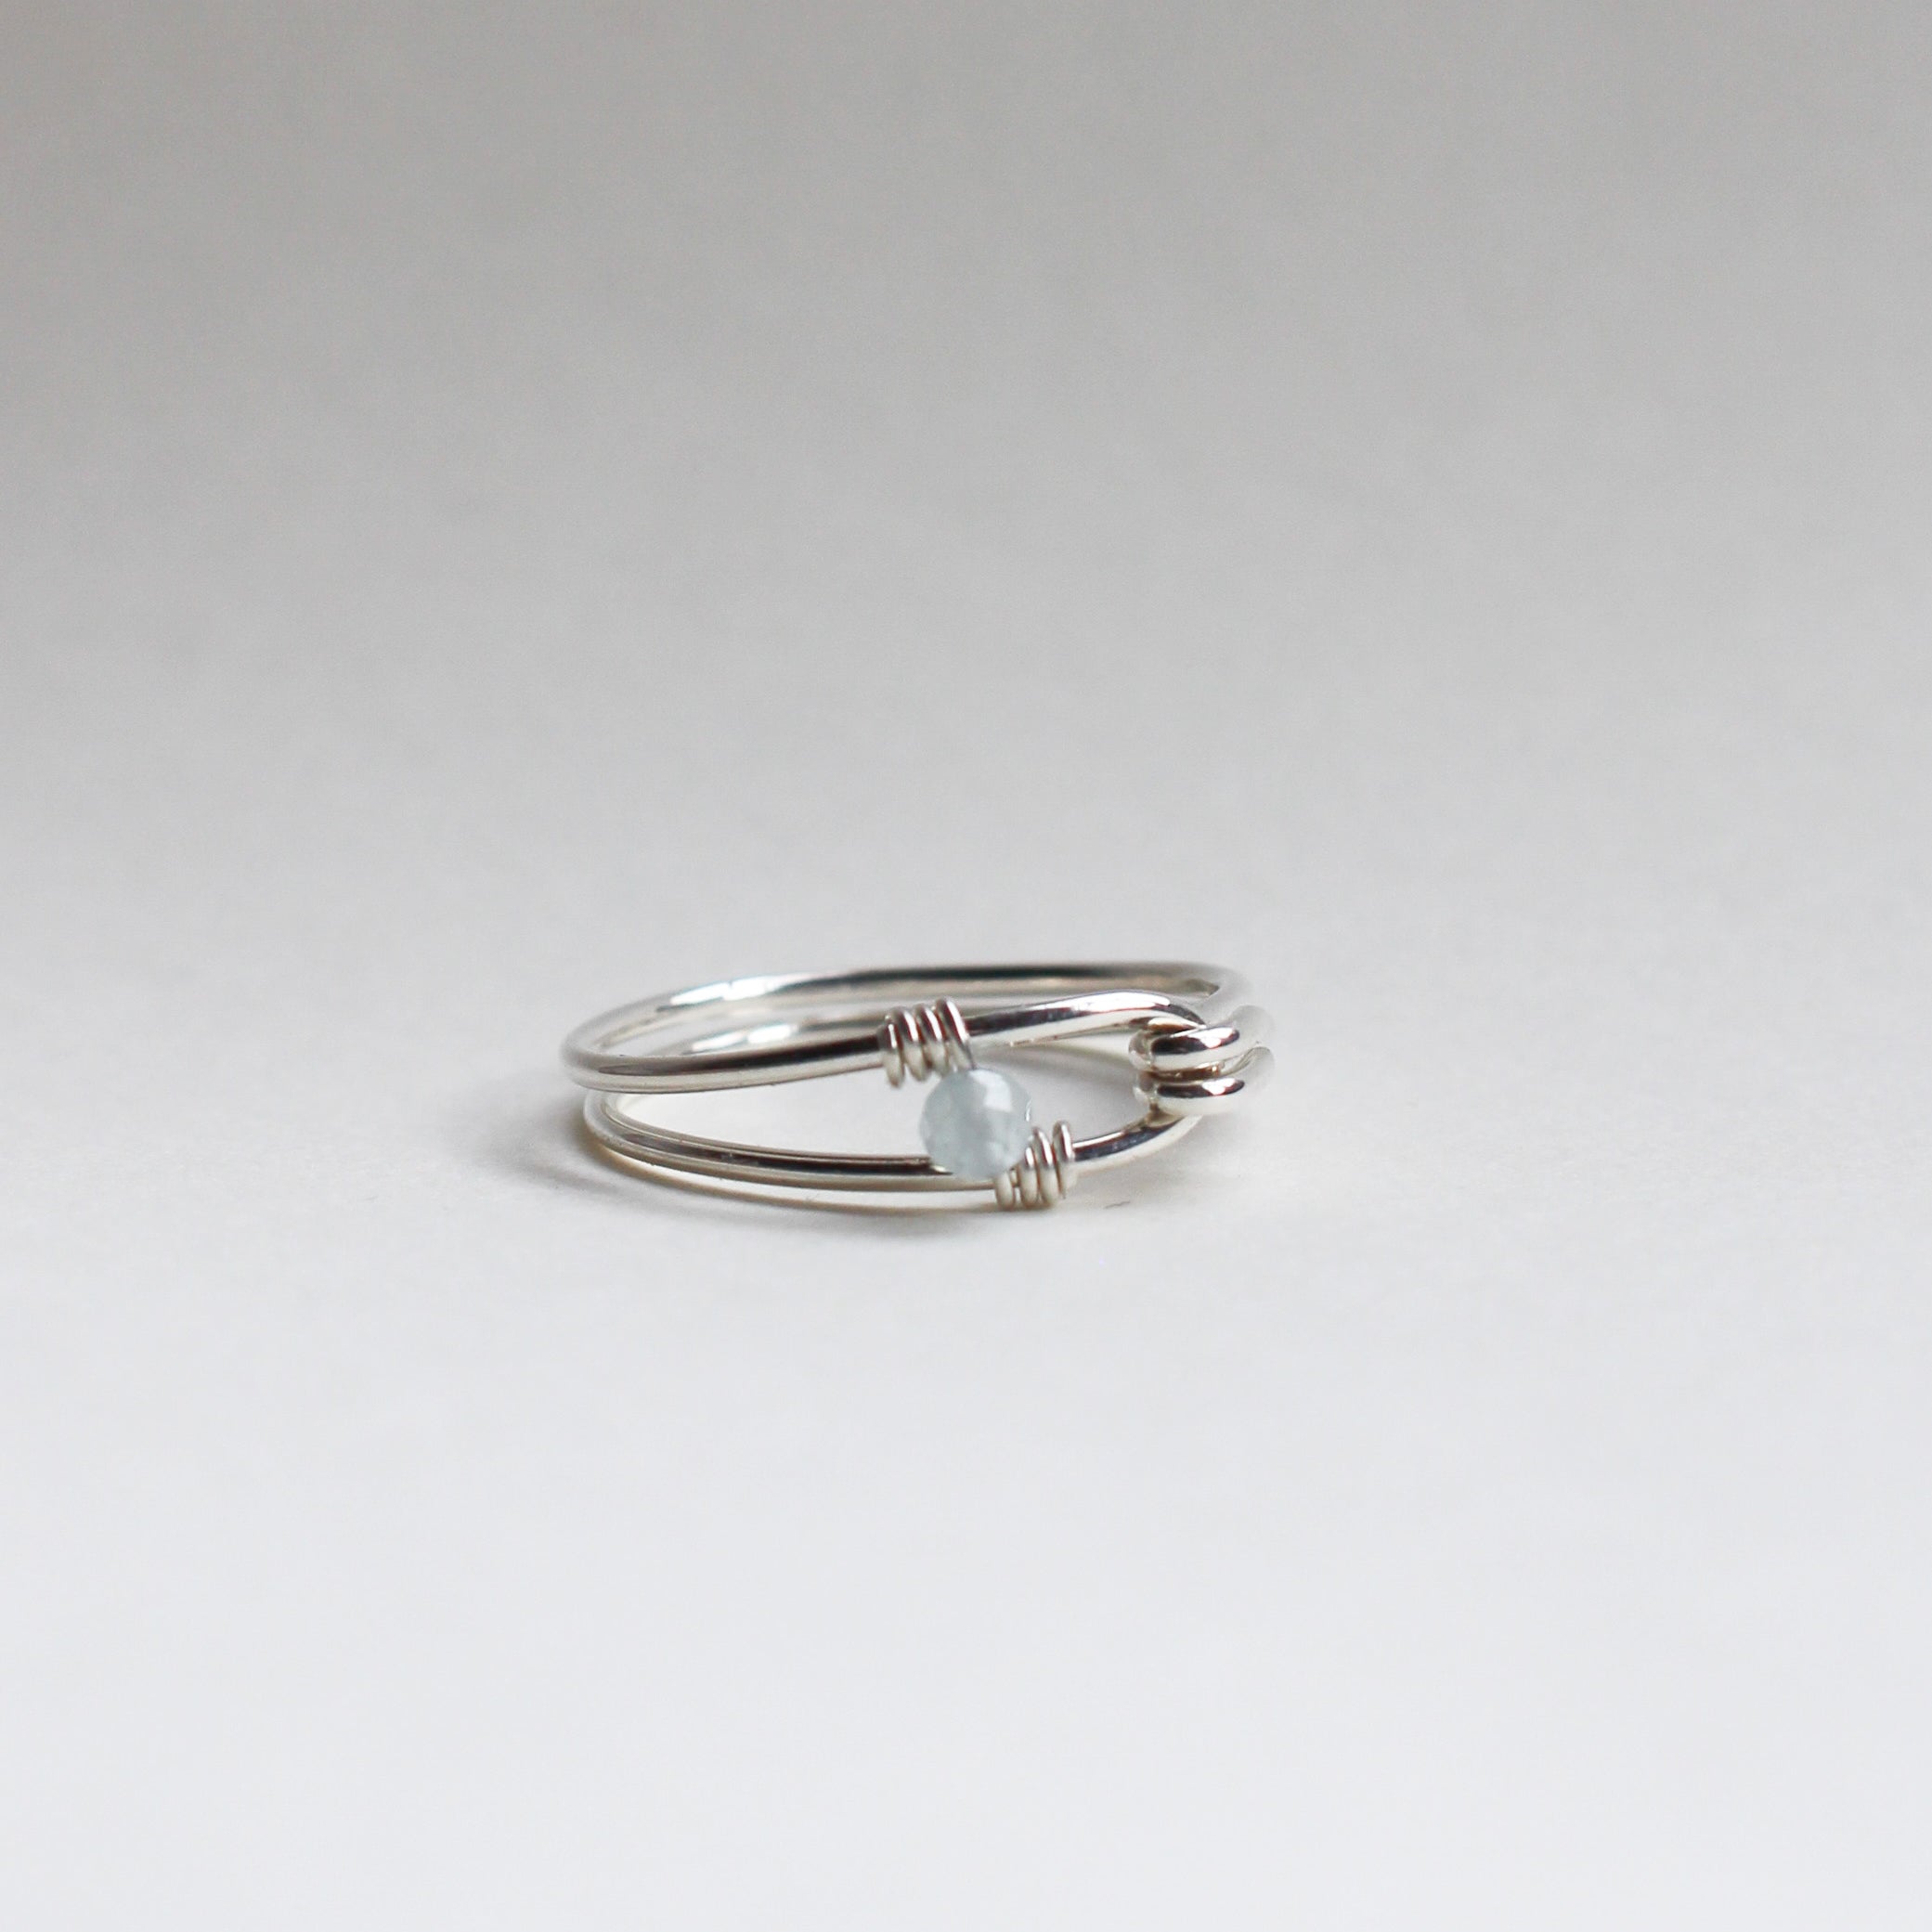 Birthstone Ring in Sterling Silver